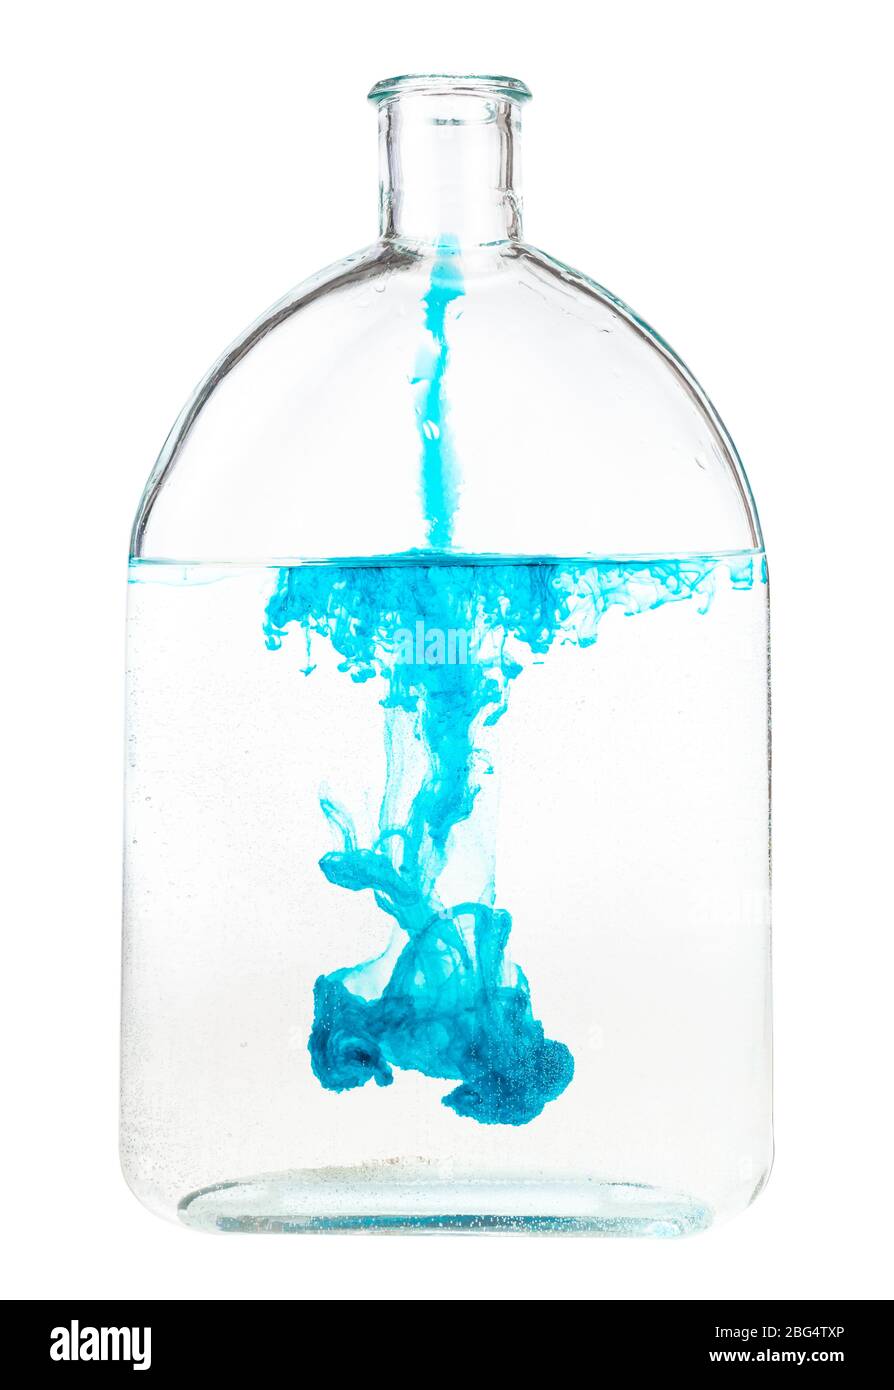 l'inchiostro blu si dissolve in acqua in una beuta di vetro isolata su fondo bianco Foto Stock